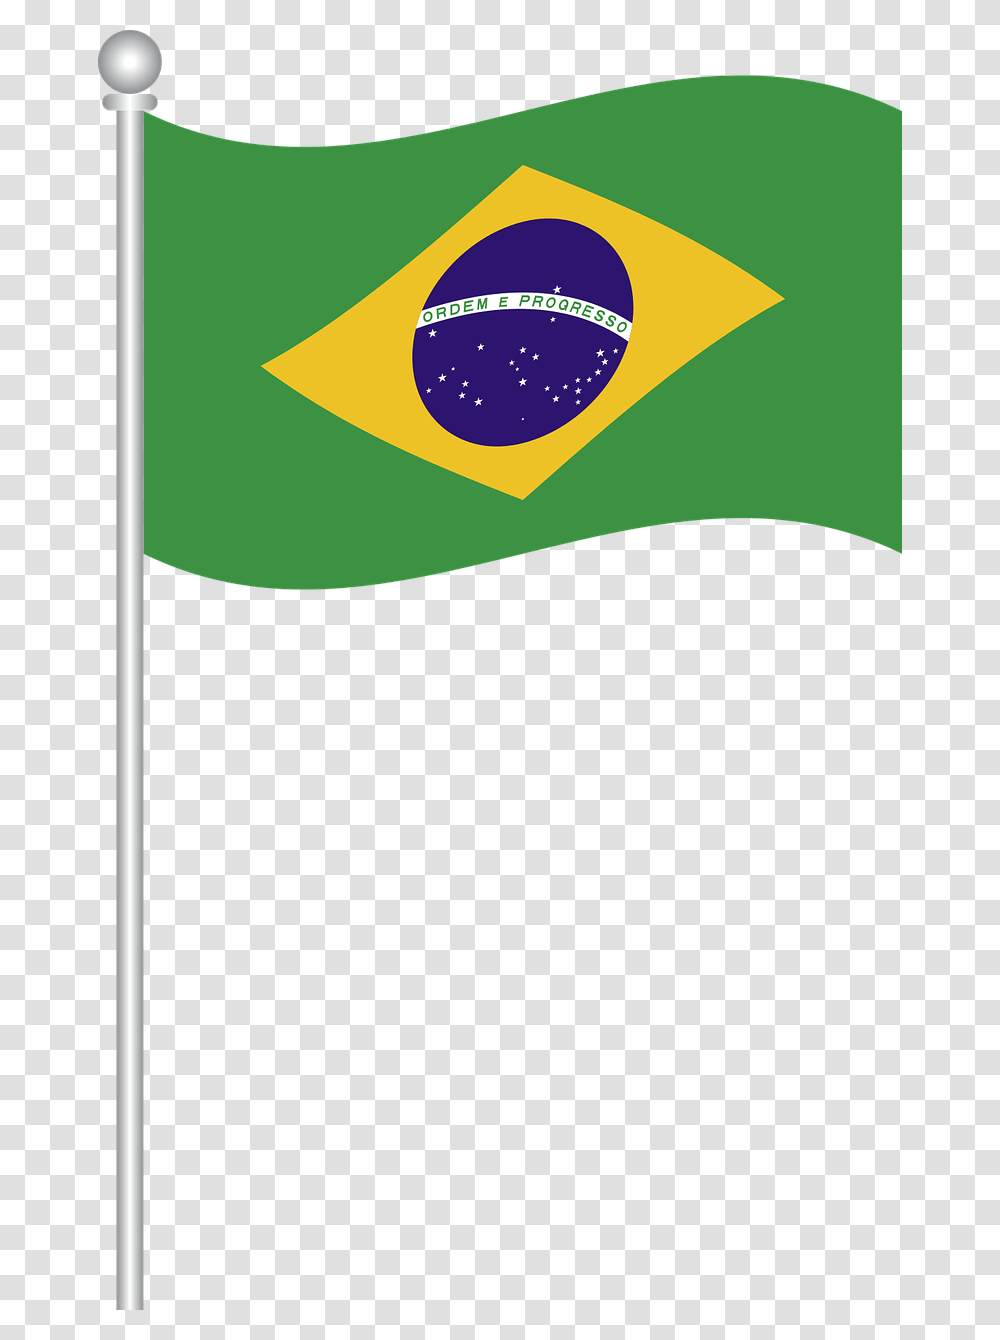 Bandeira Do Brasil Em Vetor, Label Transparent Png